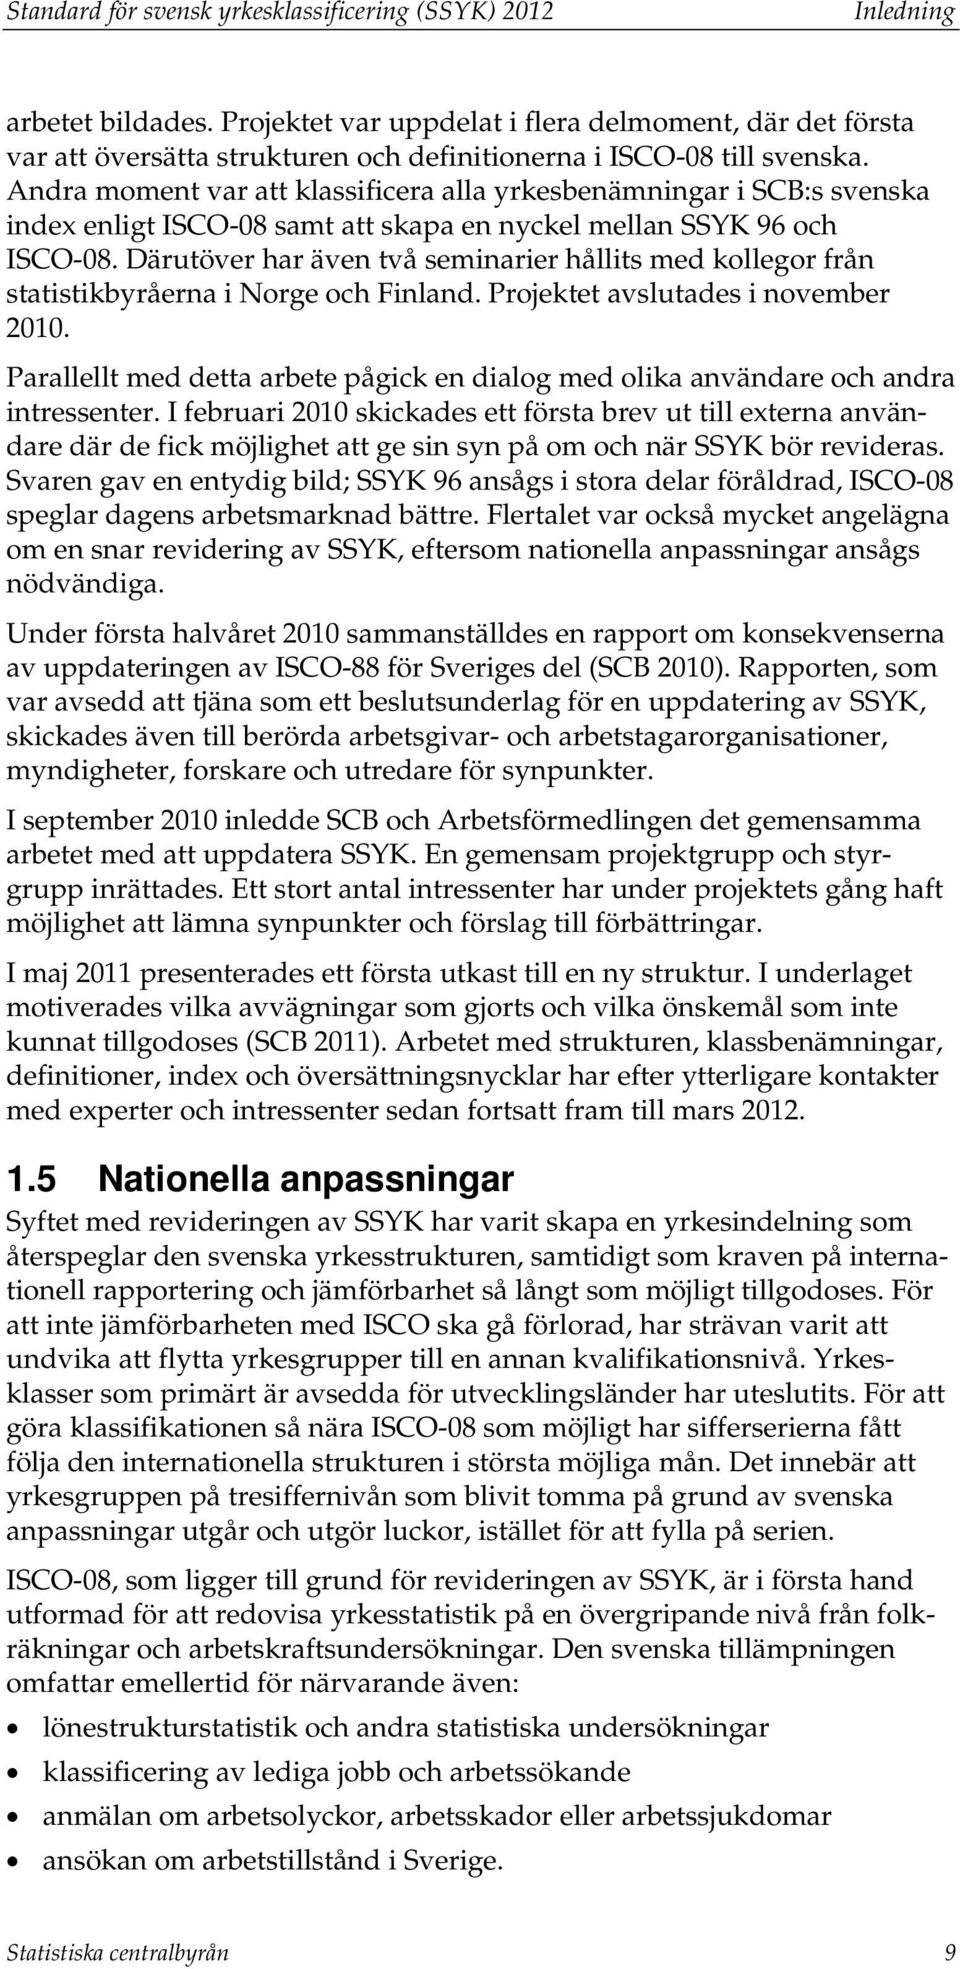 Andra moment var att klassificera alla yrkesbenämningar i SCB:s svenska index enligt ISCO-08 samt att skapa en nyckel mellan SSYK 96 och ISCO-08.